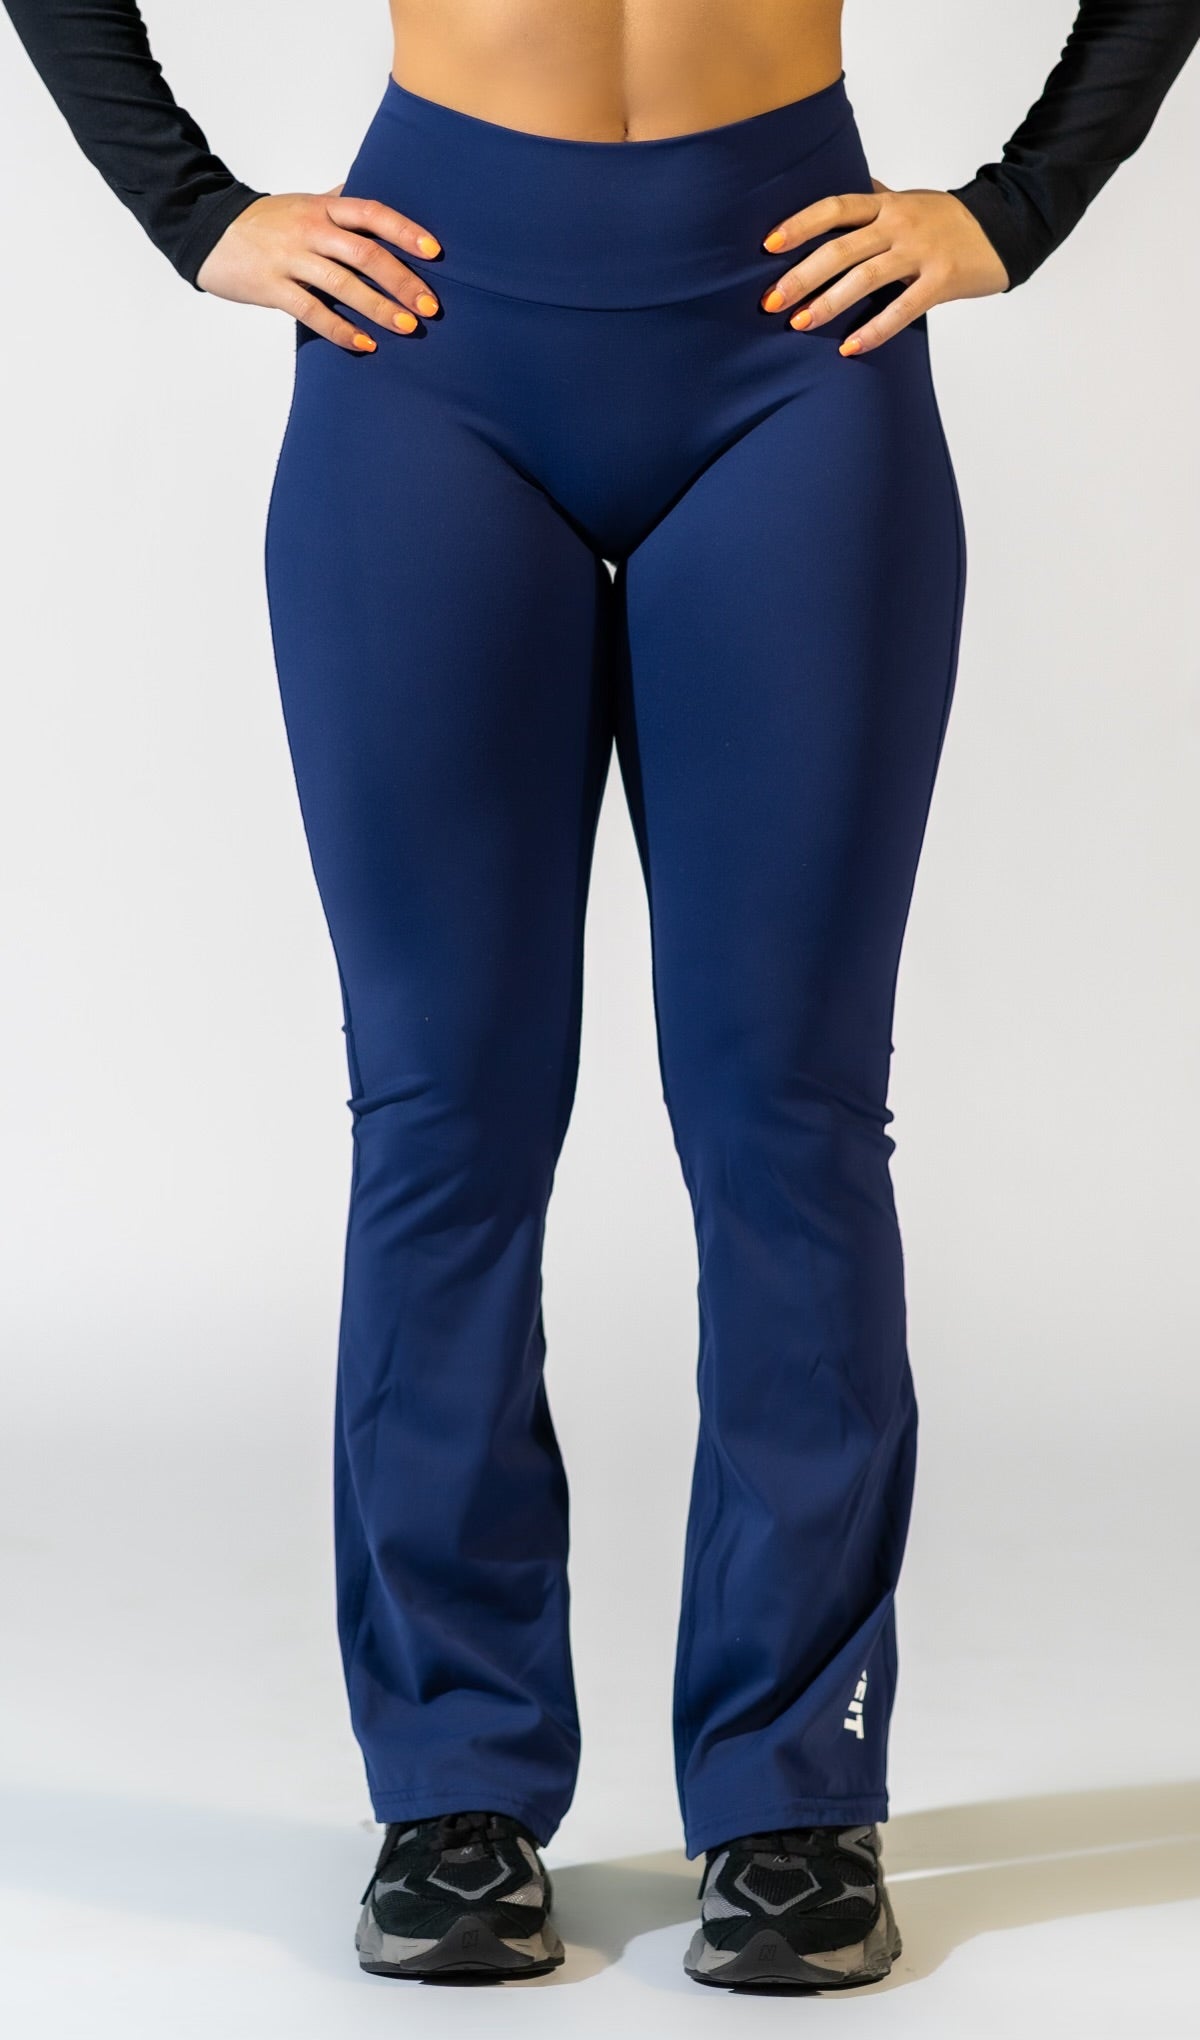 Navy Blue Scrunch-Butt Yoga Pants